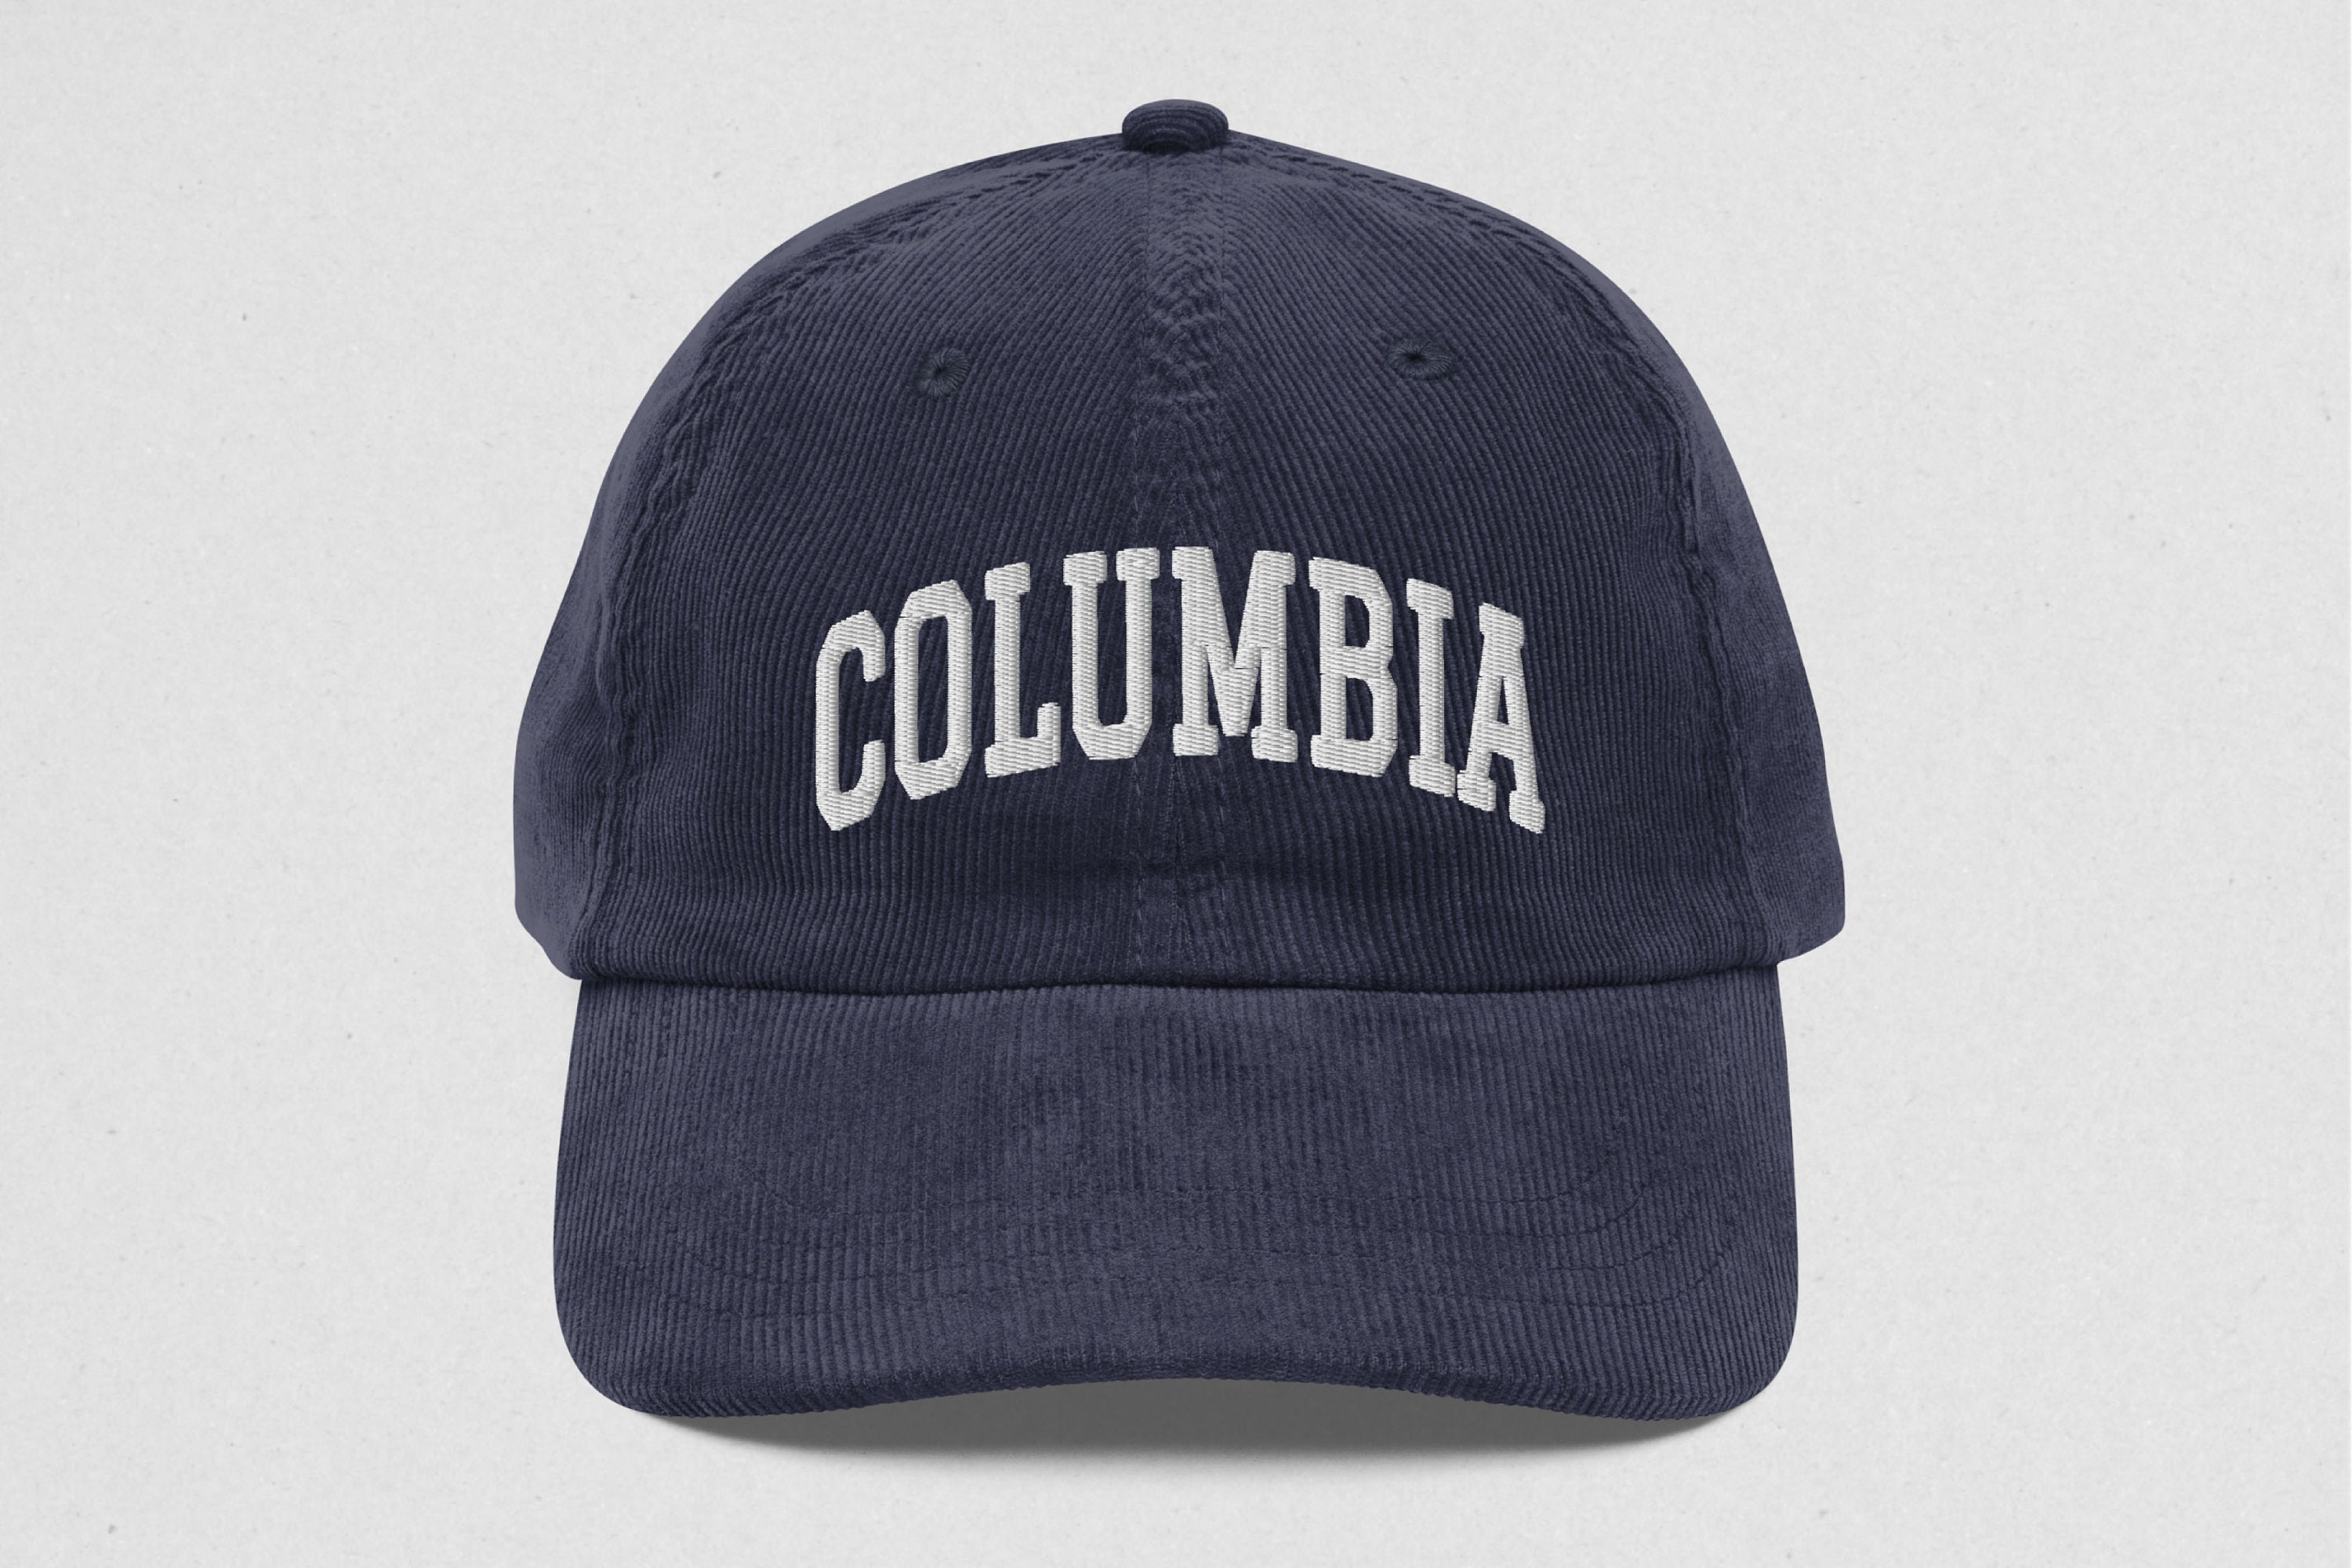 Las mejores ofertas en Sombreros Columbia Talla M para hombres